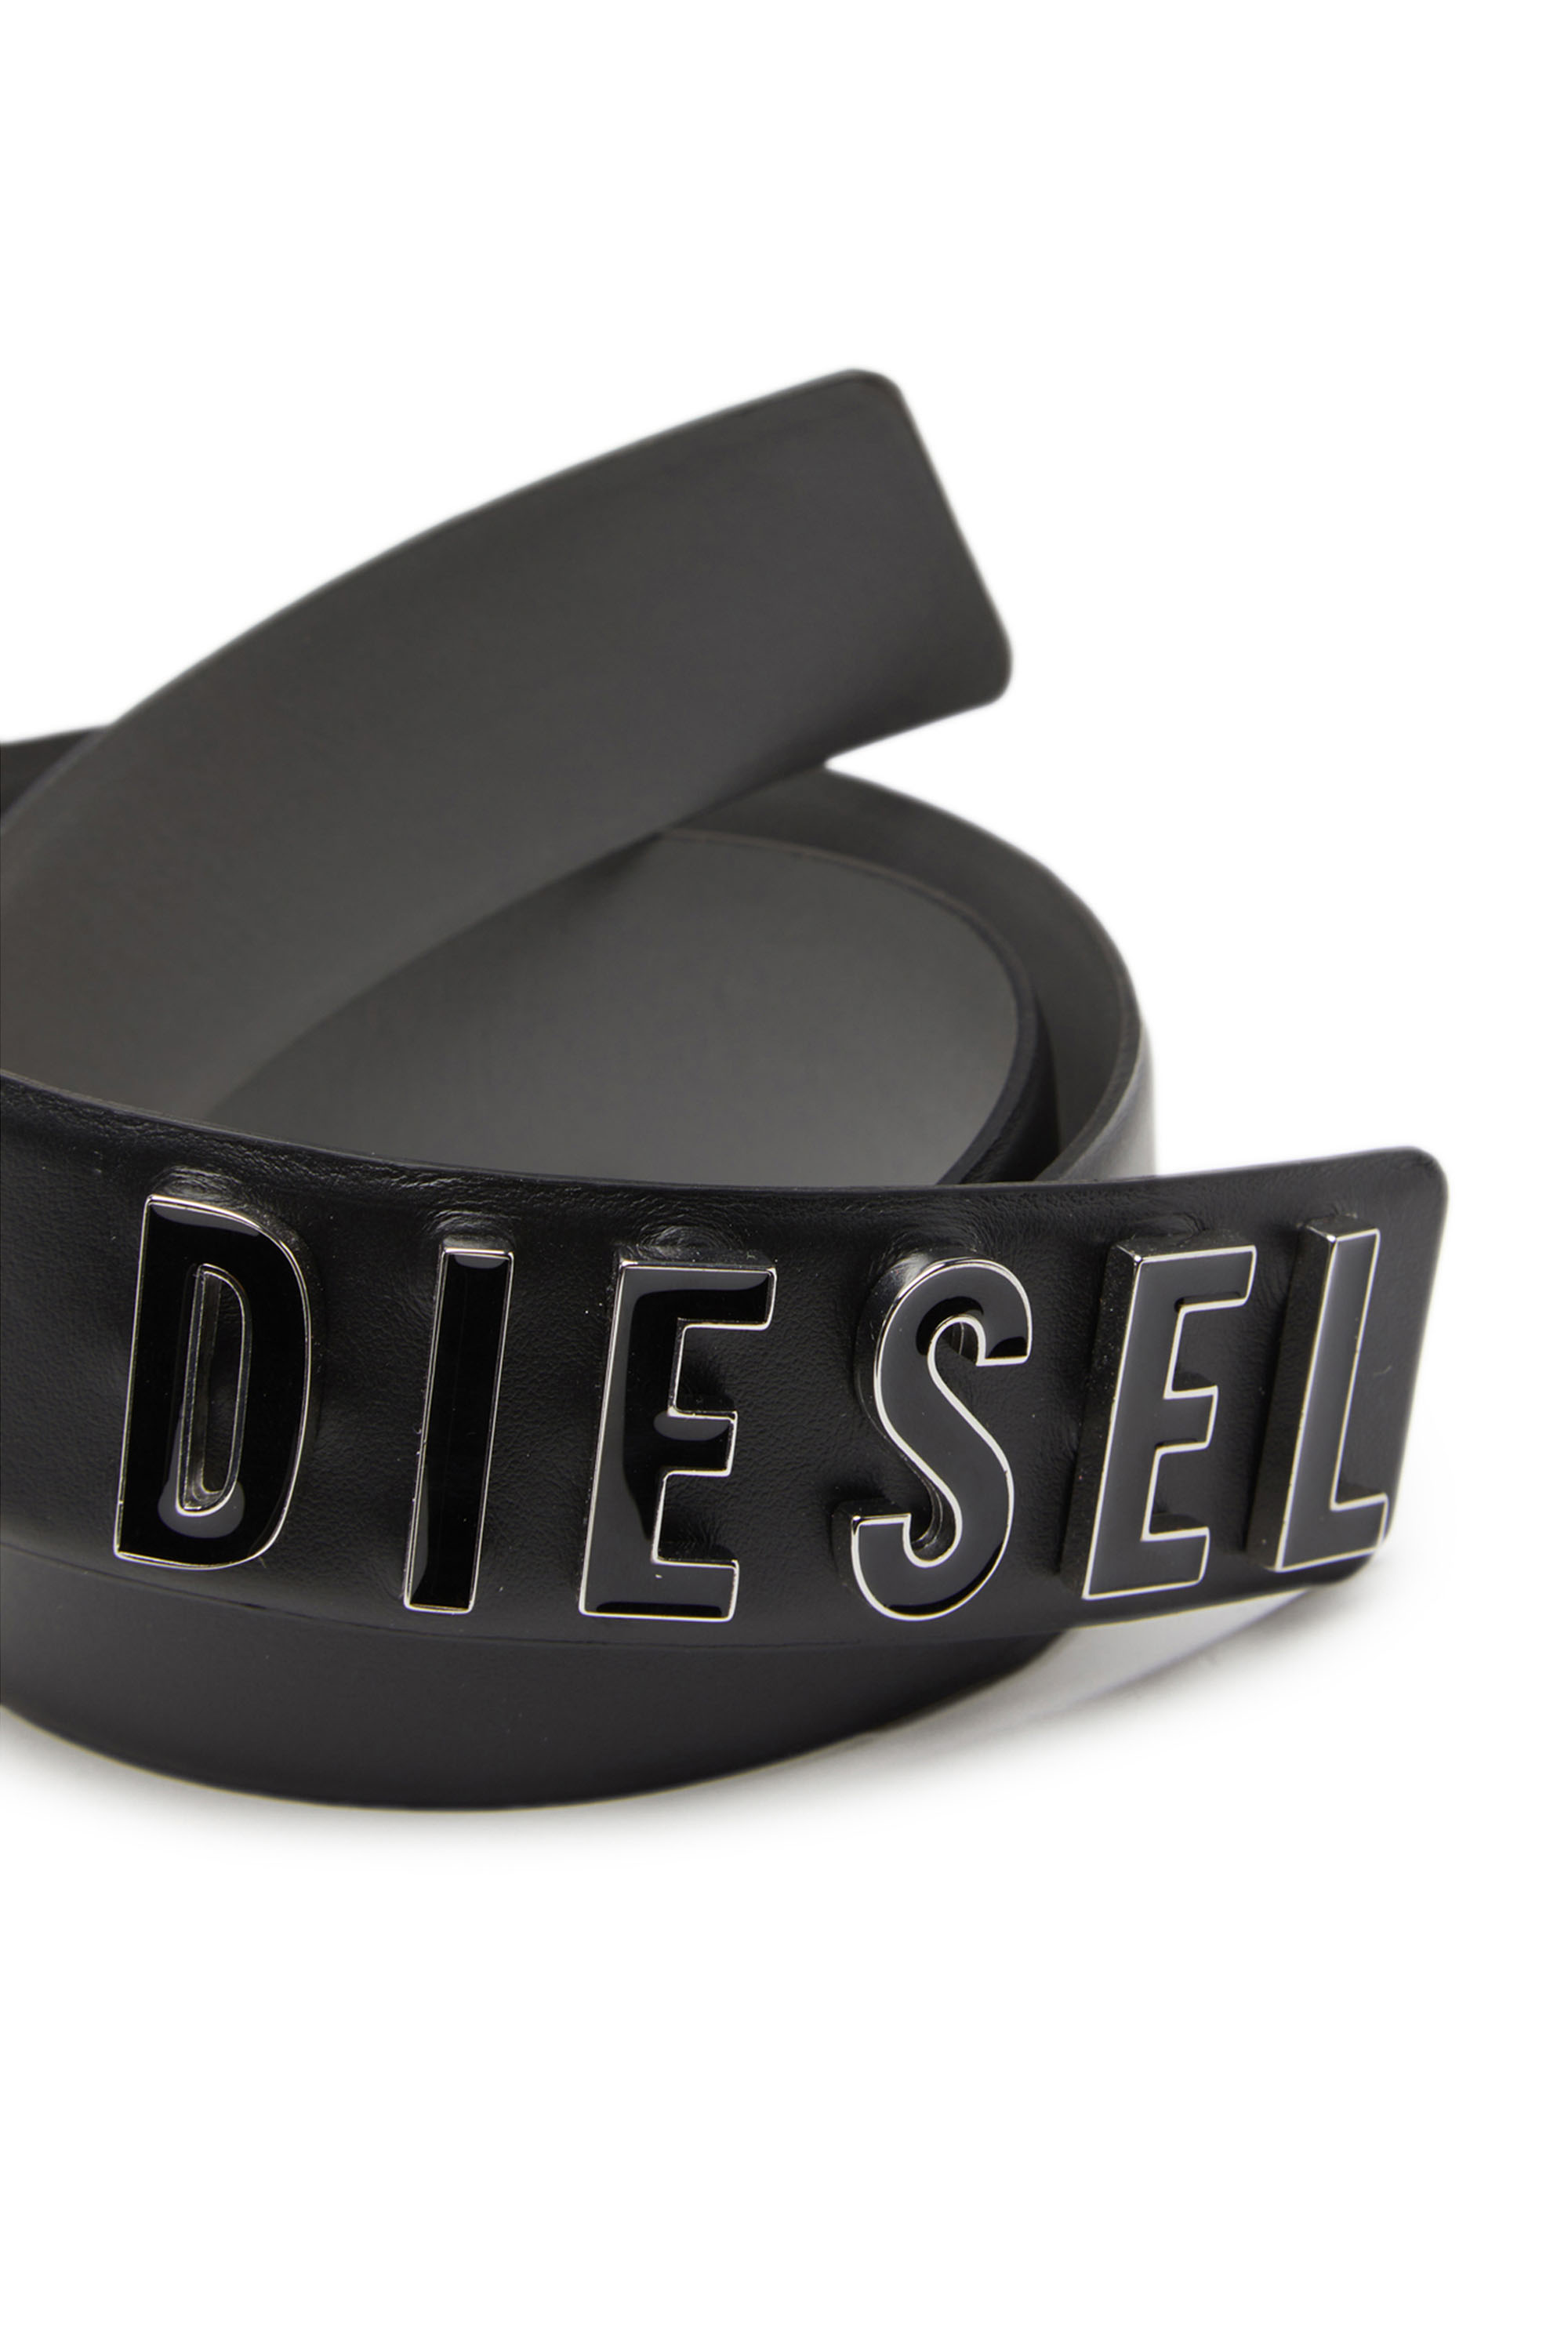 Diesel - B-LETTERS B, Negro - Image 3